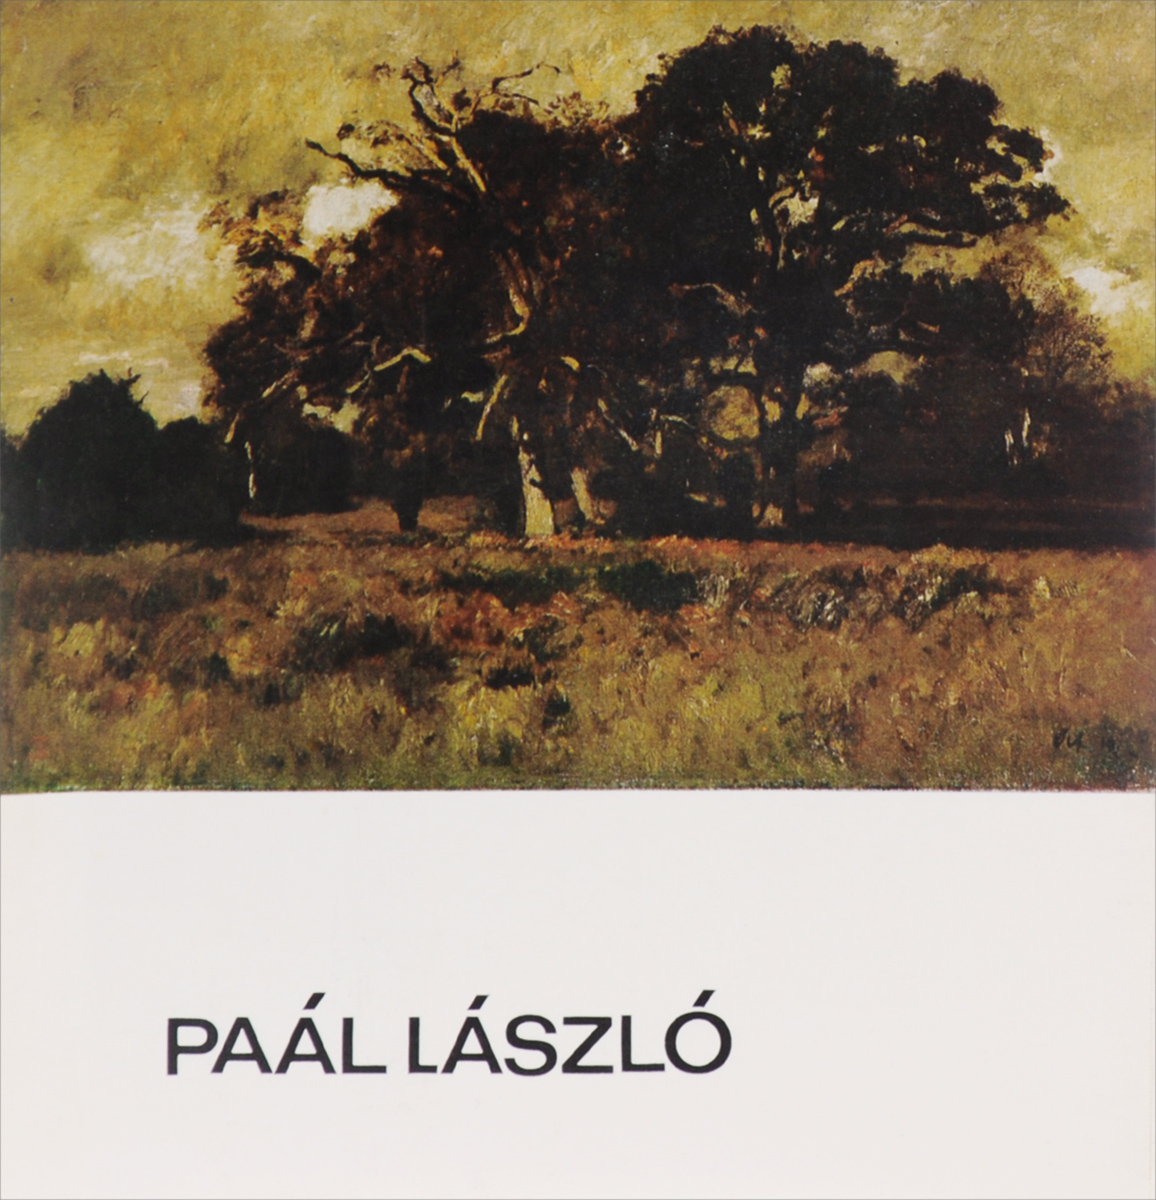 Paal Laszlo